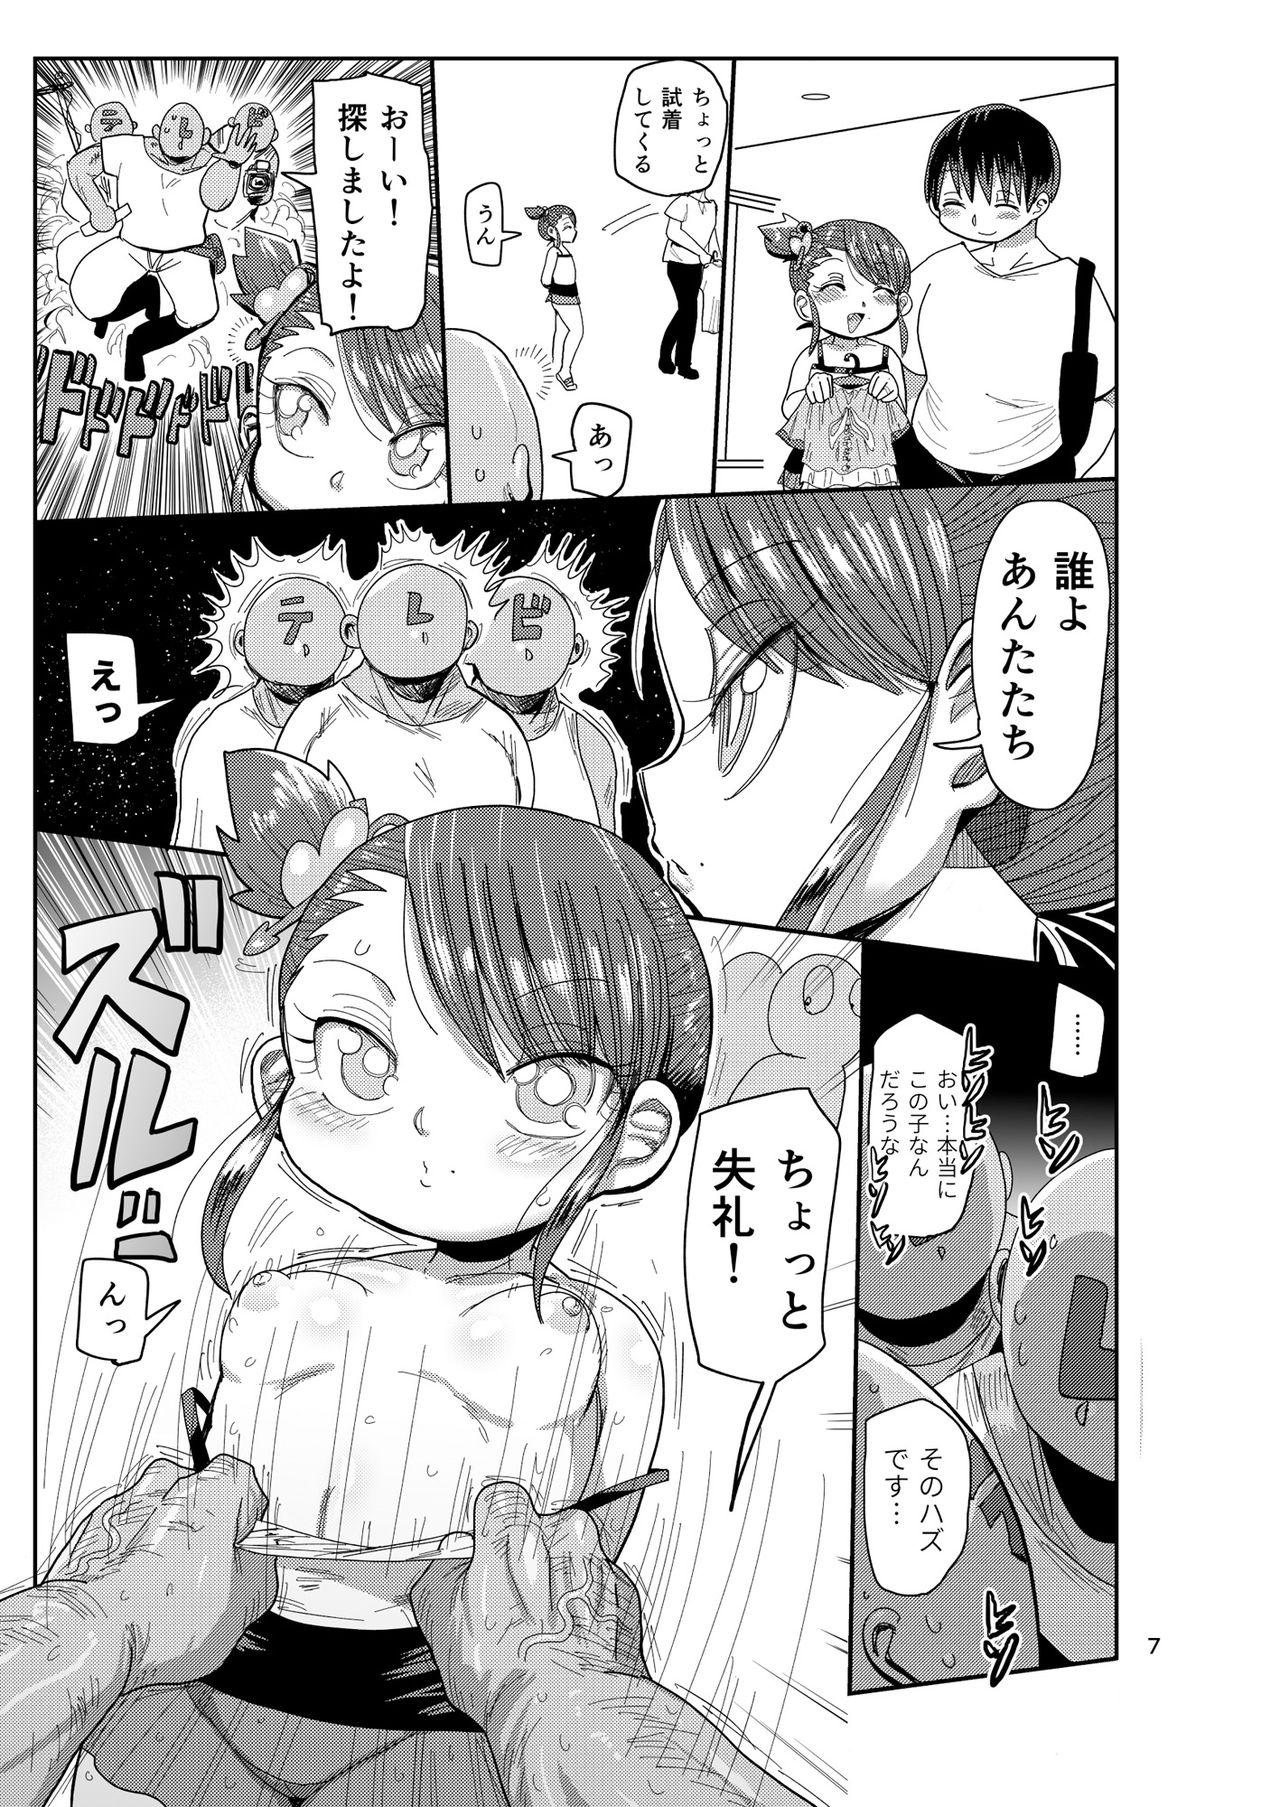 Wetpussy Watashi no Mawari ni wa Kiken ga Ippai! - Original Linda - Page 6